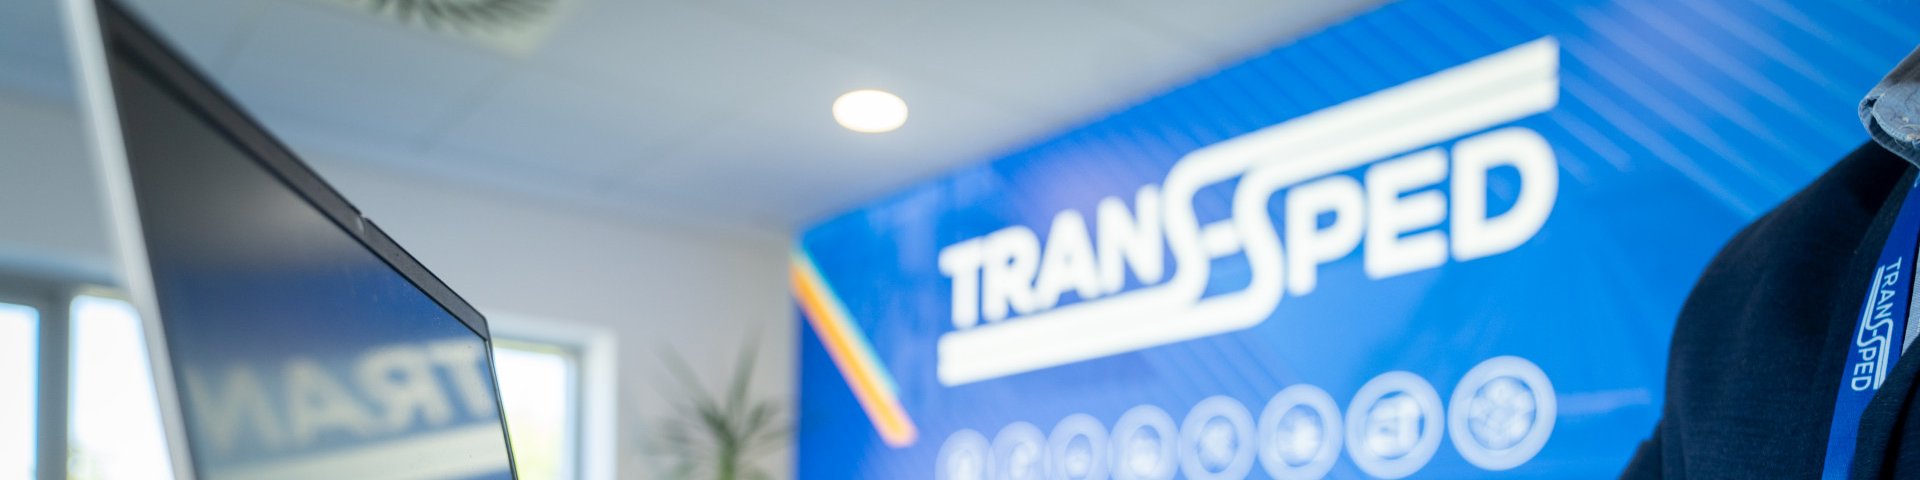 A Trans-Sped Kft. megvásárolta az EURO-LOG Kft. raktározási és szállítmányozási üzletágait